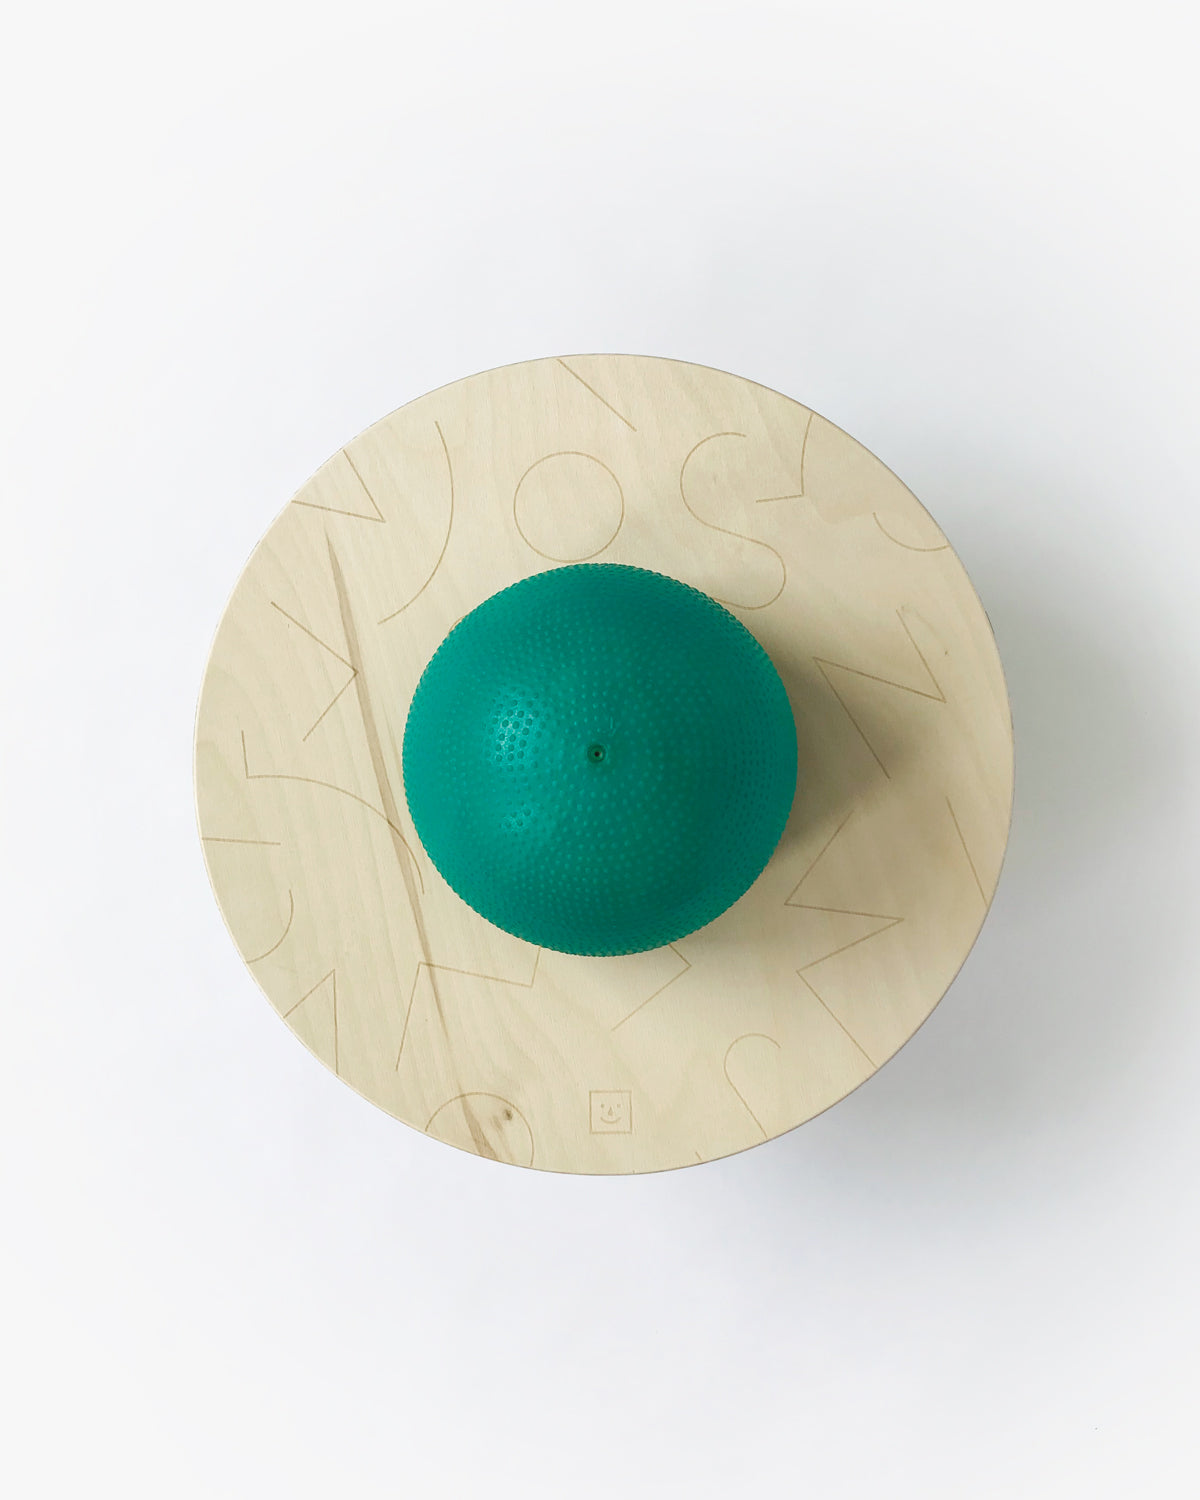 Ballon sauteur ― Pogo ball vert